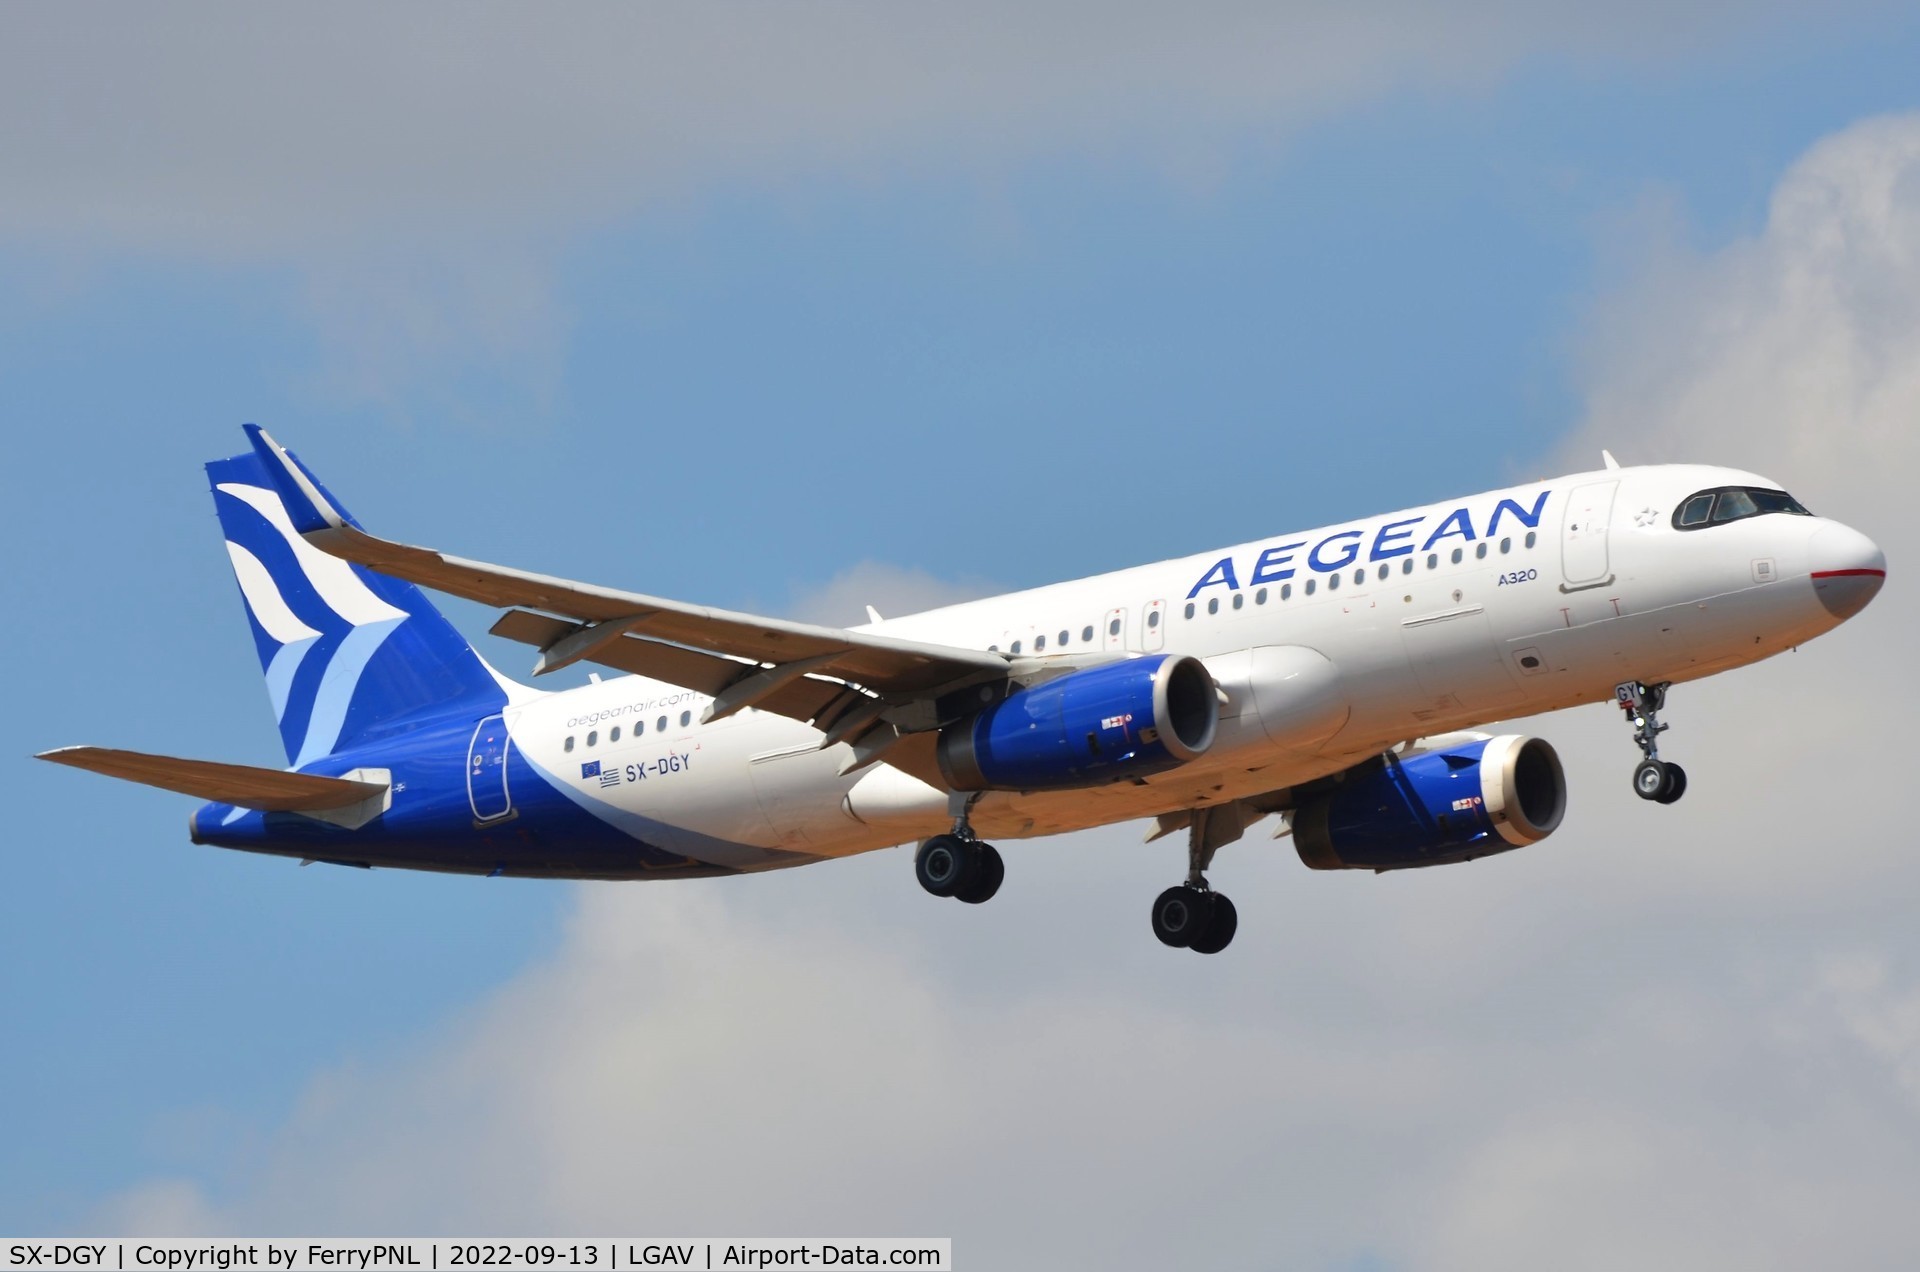 SX-DGY, 2015 Airbus A320-232 C/N 6611, Aegean A320 landing